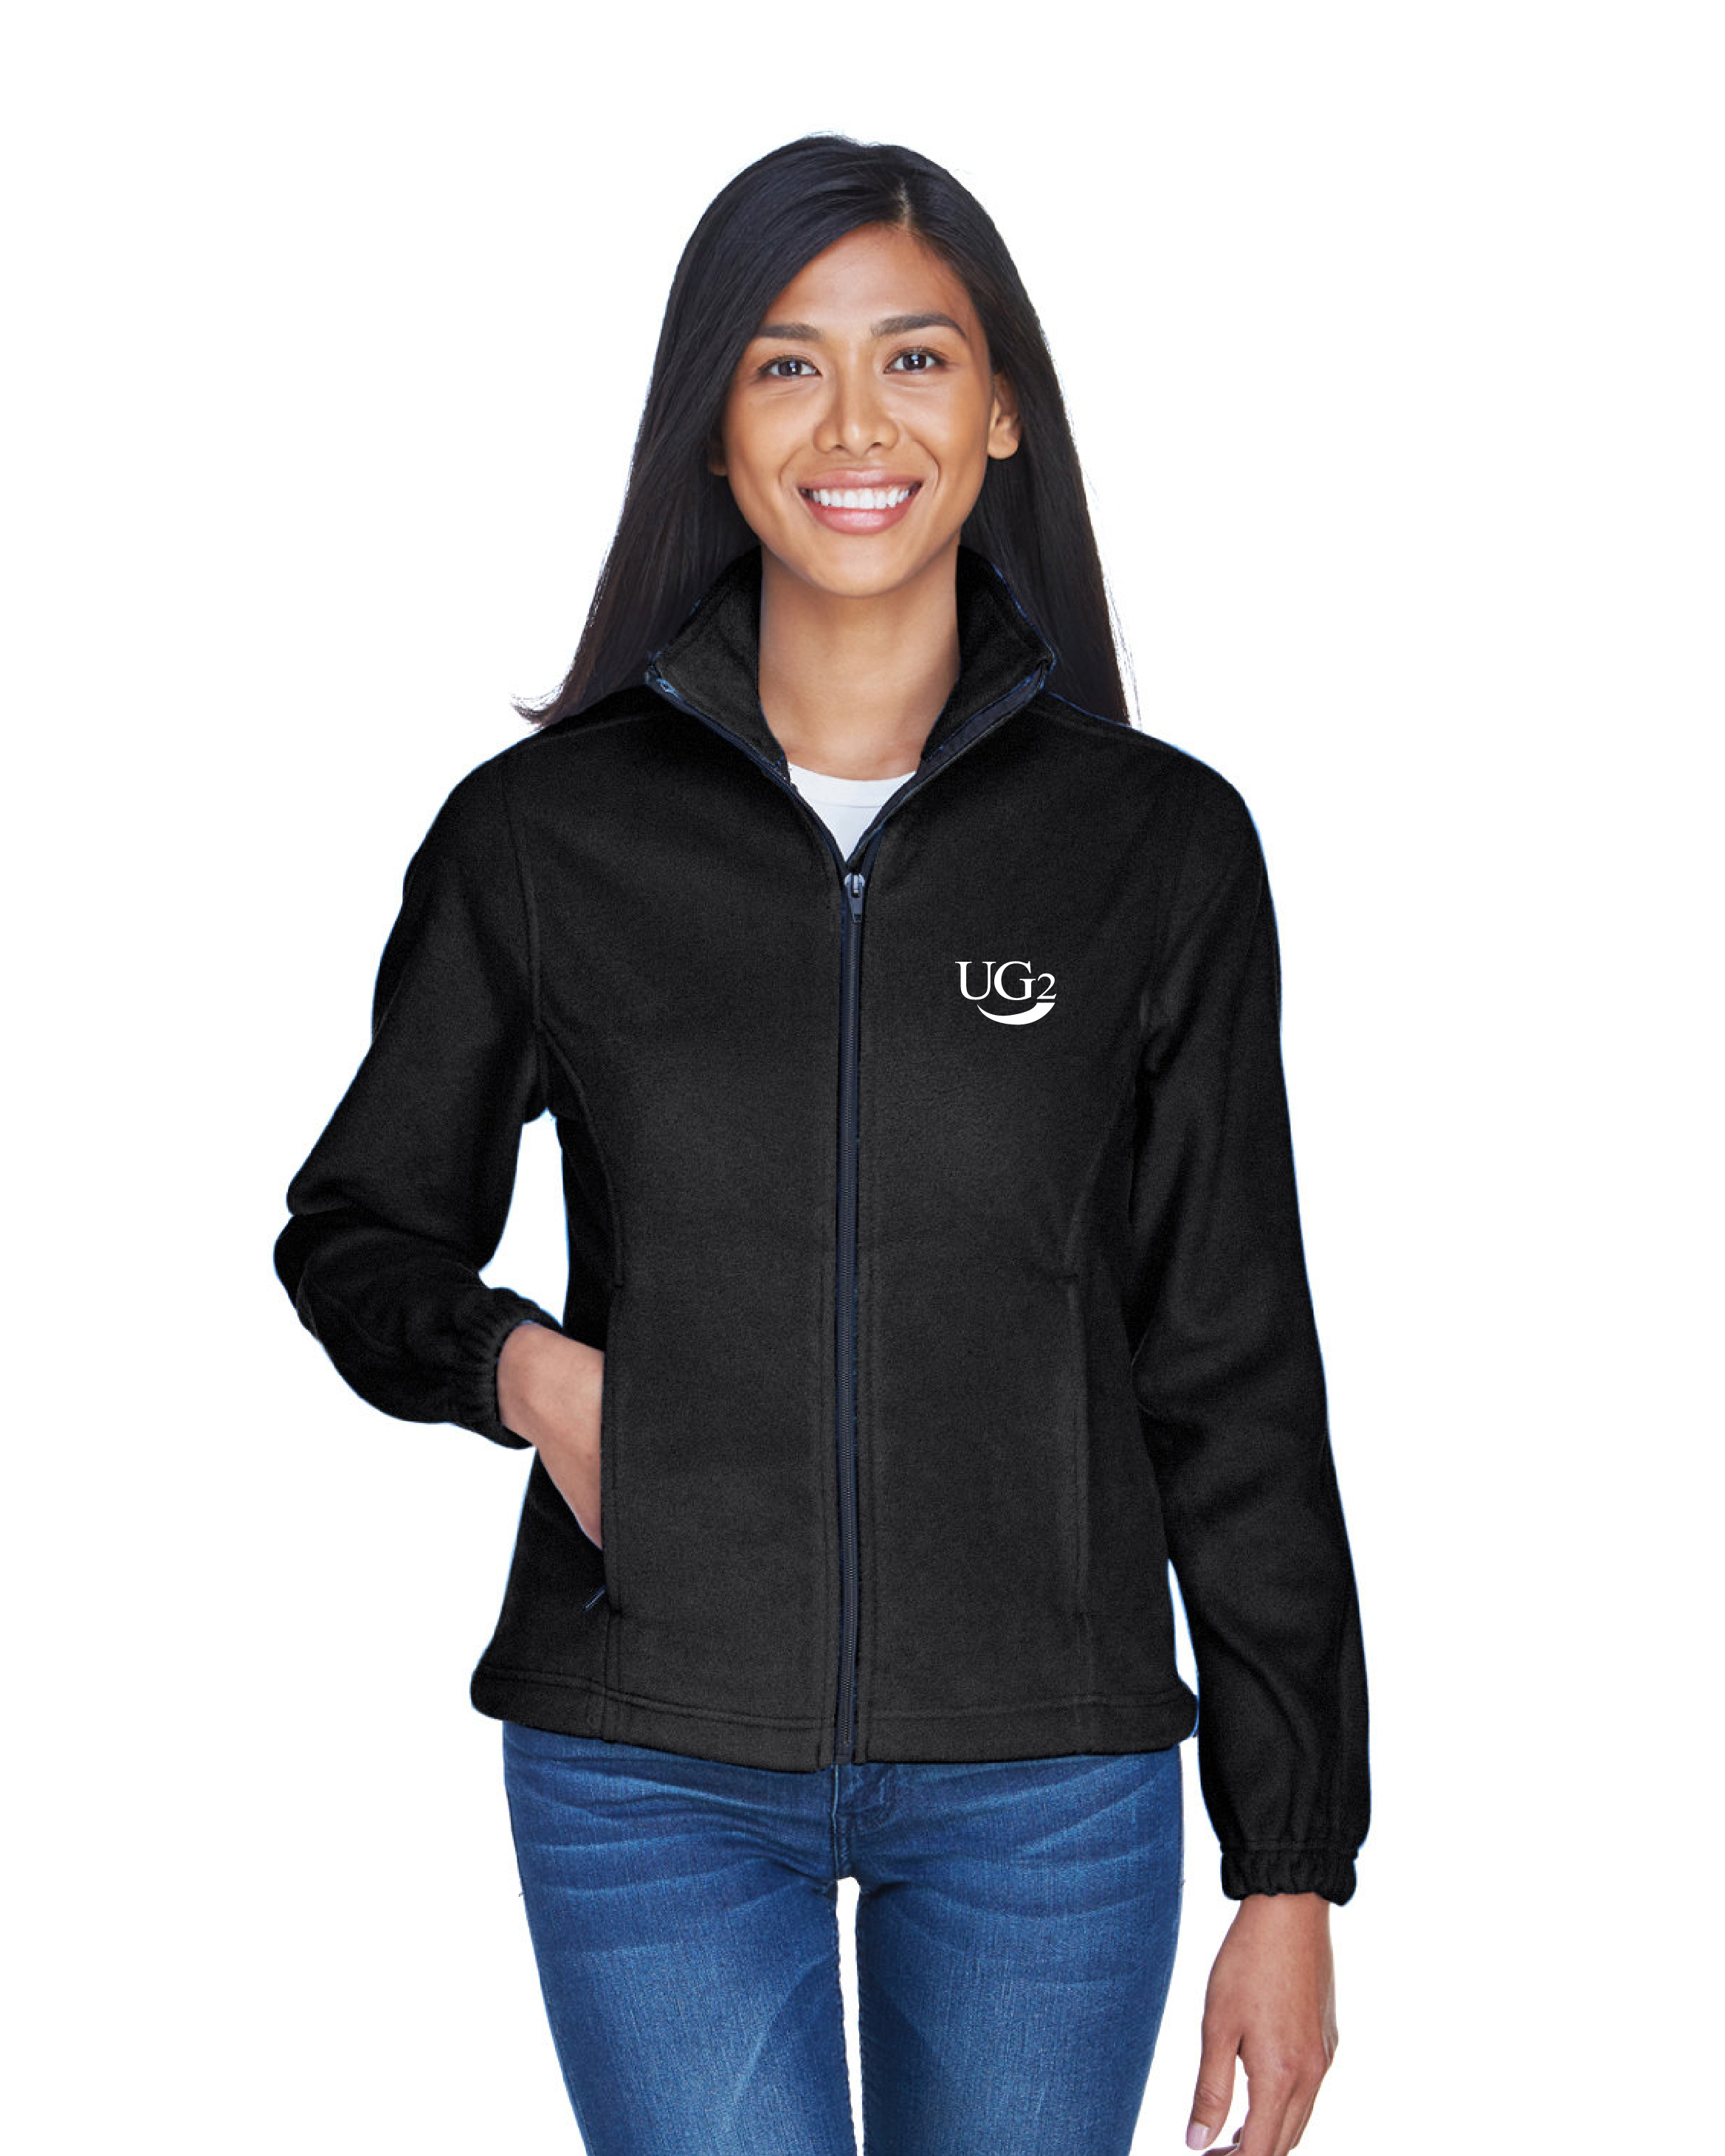 UG2 8481 Ladies\' Iceberg Fleece Full-Zip Jacket With Embroidered Logo